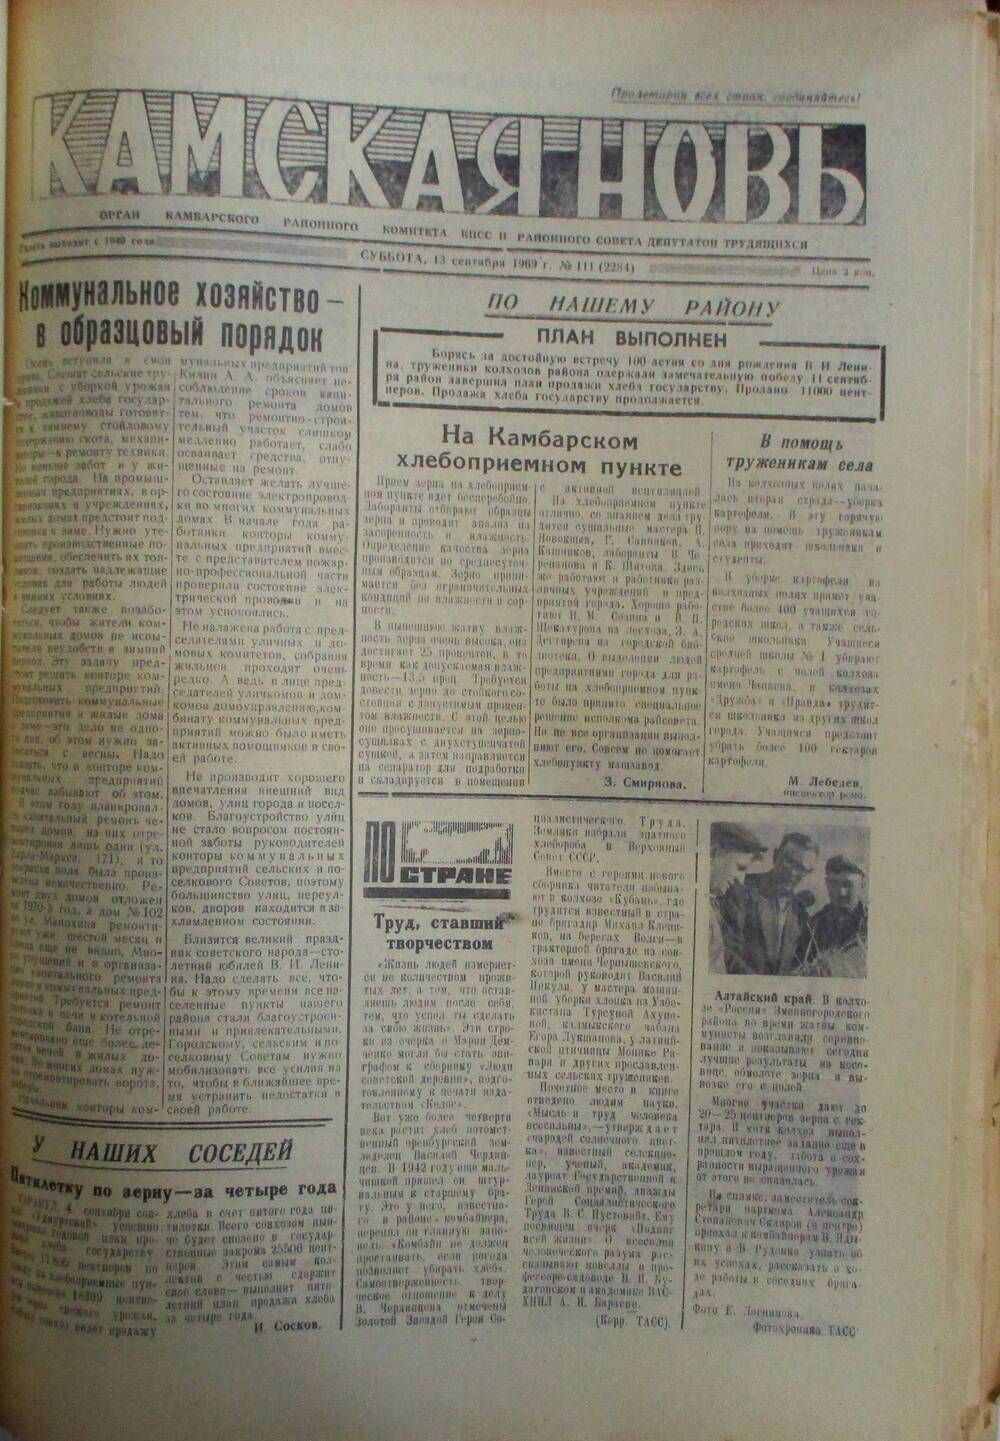 Газеты Камская новь за 1969 год, орган Камбарского райсовета и  РККПСС, с №1 по №66, с №68 по №156. №111.